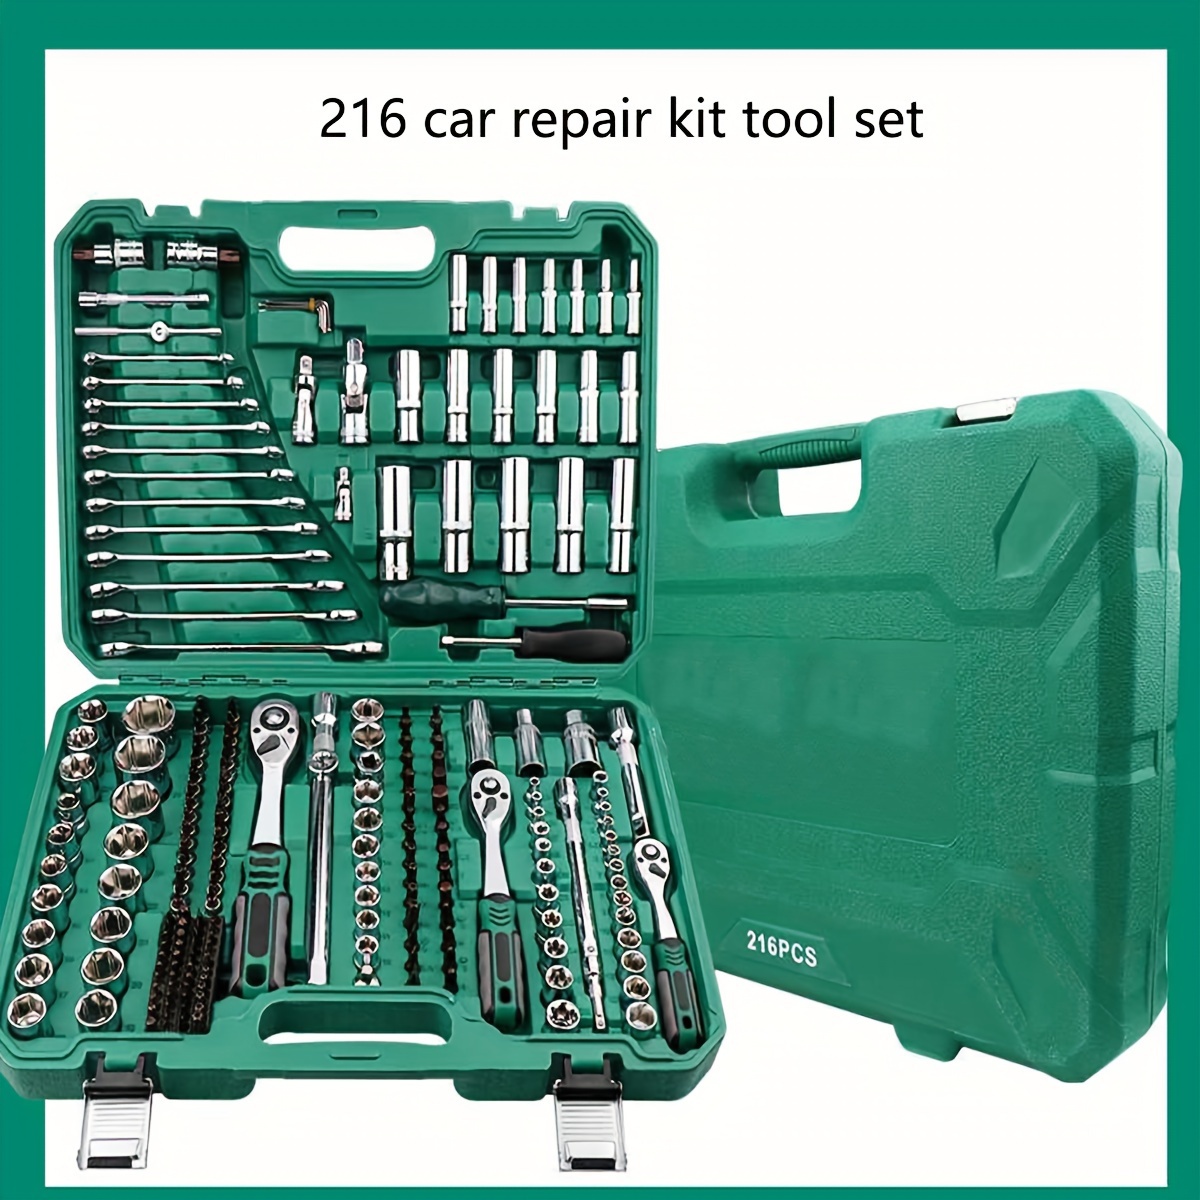 216pcs Mechanics Tool Set And Socket Set, 1/4